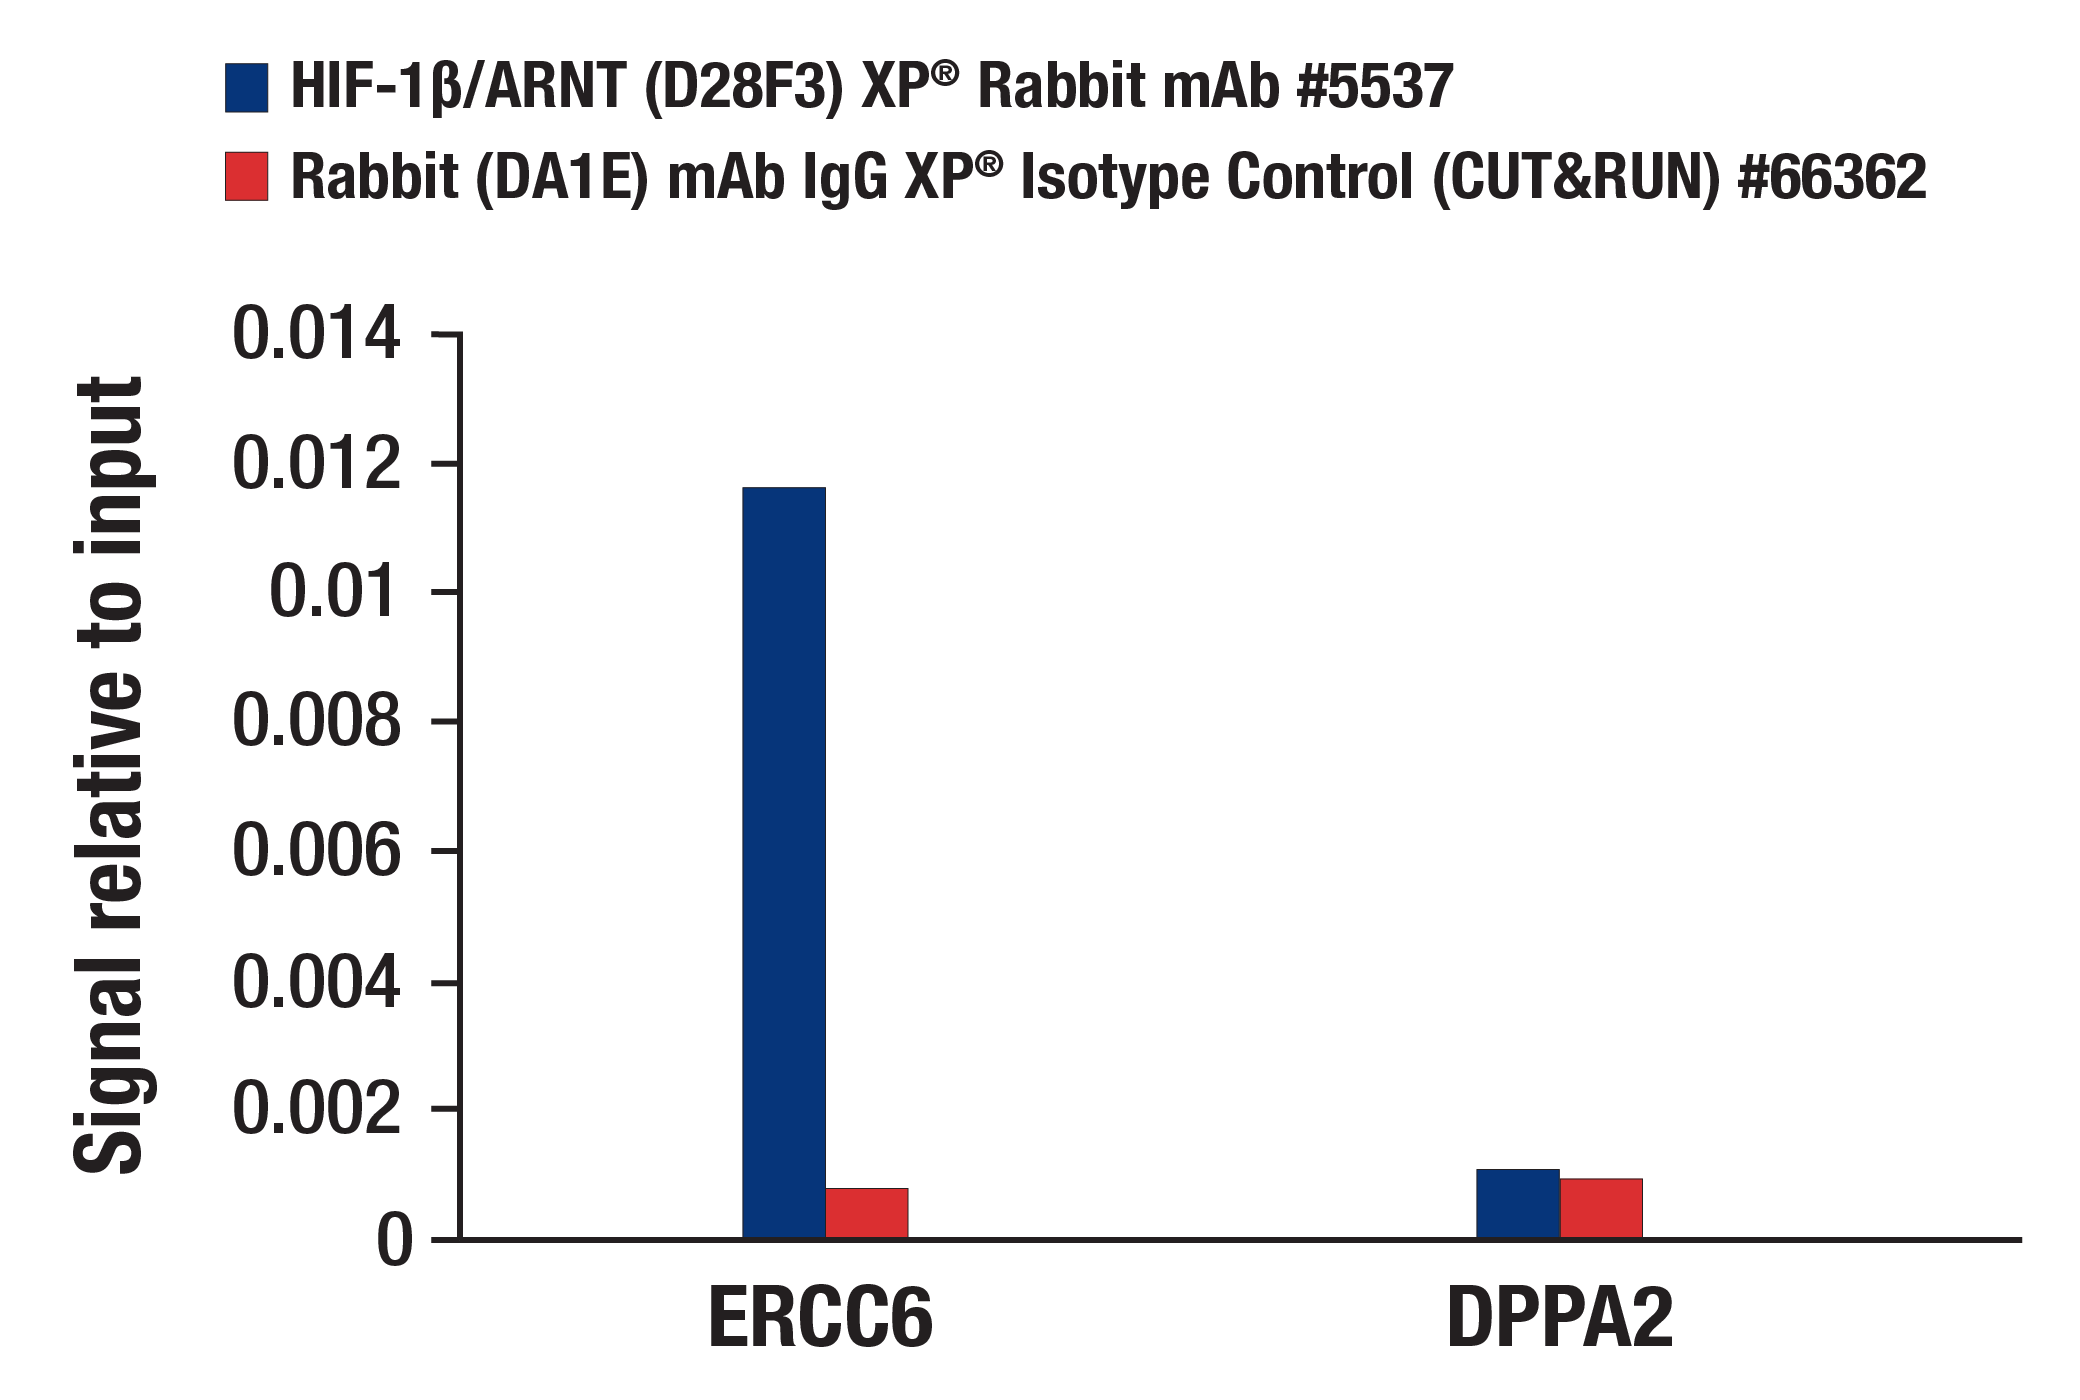 CUT and RUN Image 3: HIF-1β/ARNT (D28F3) XP® Rabbit mAb